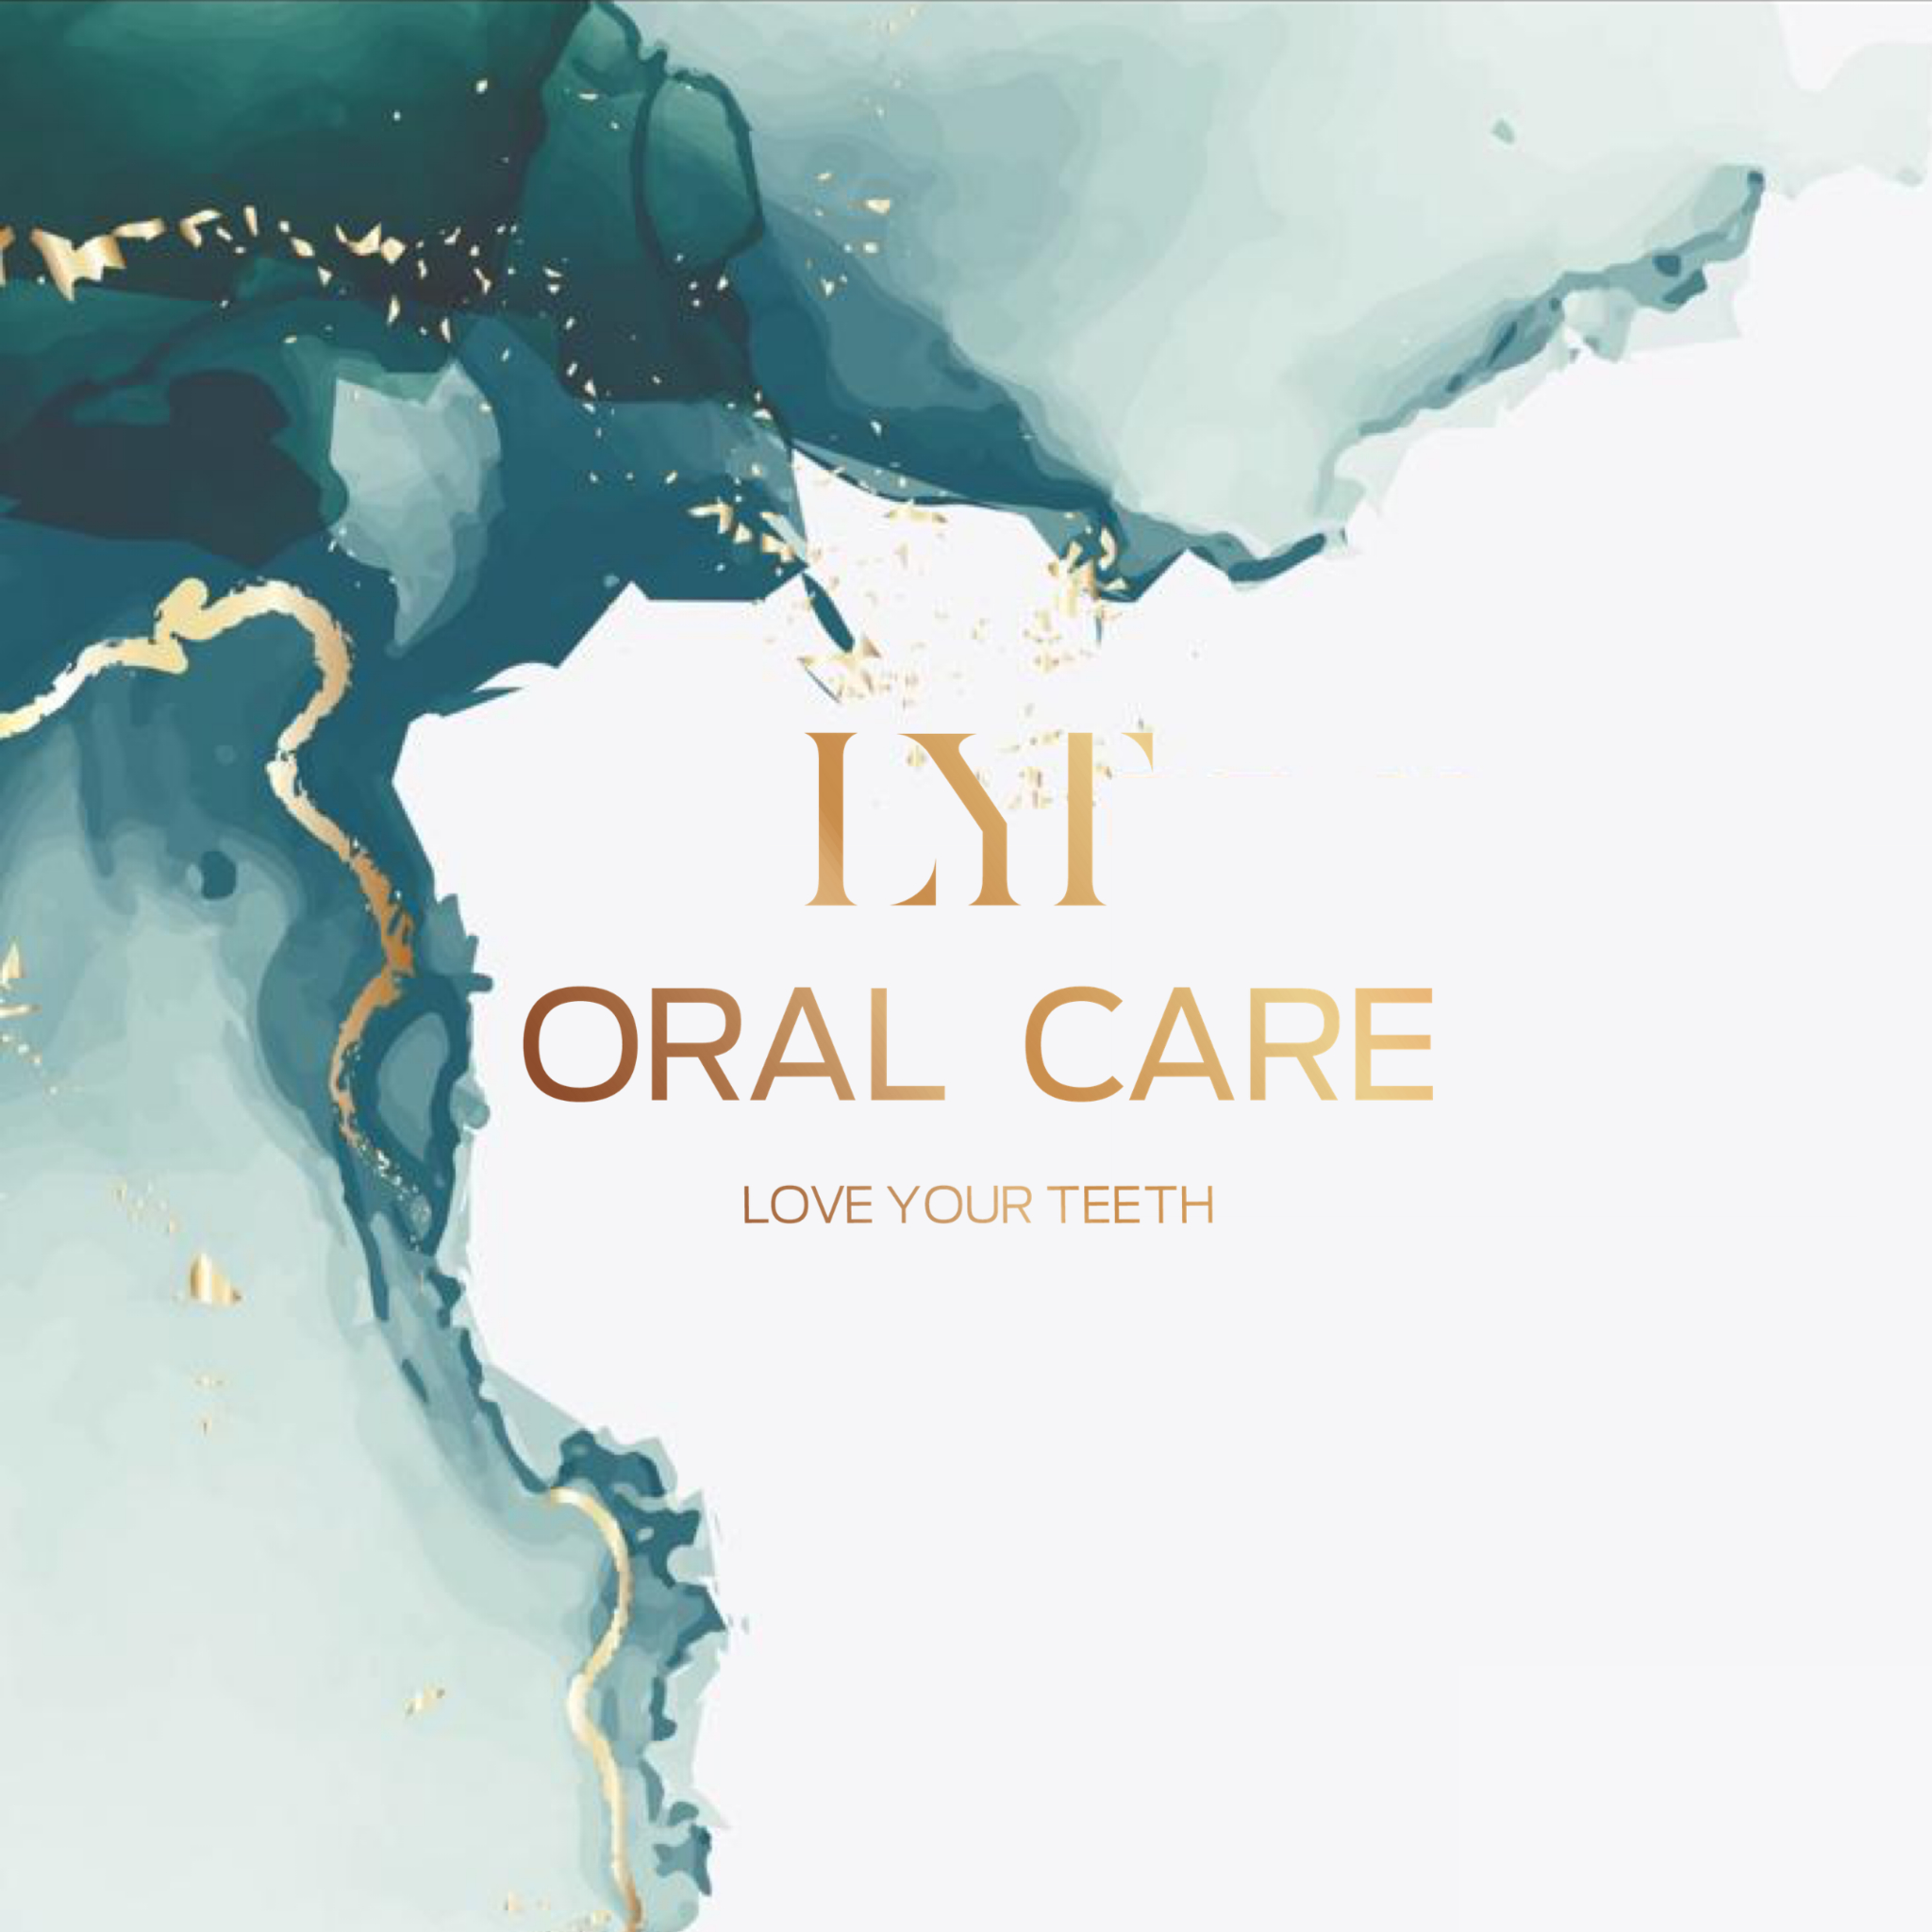 LYT Oral Care - Hygiénistes dentaires